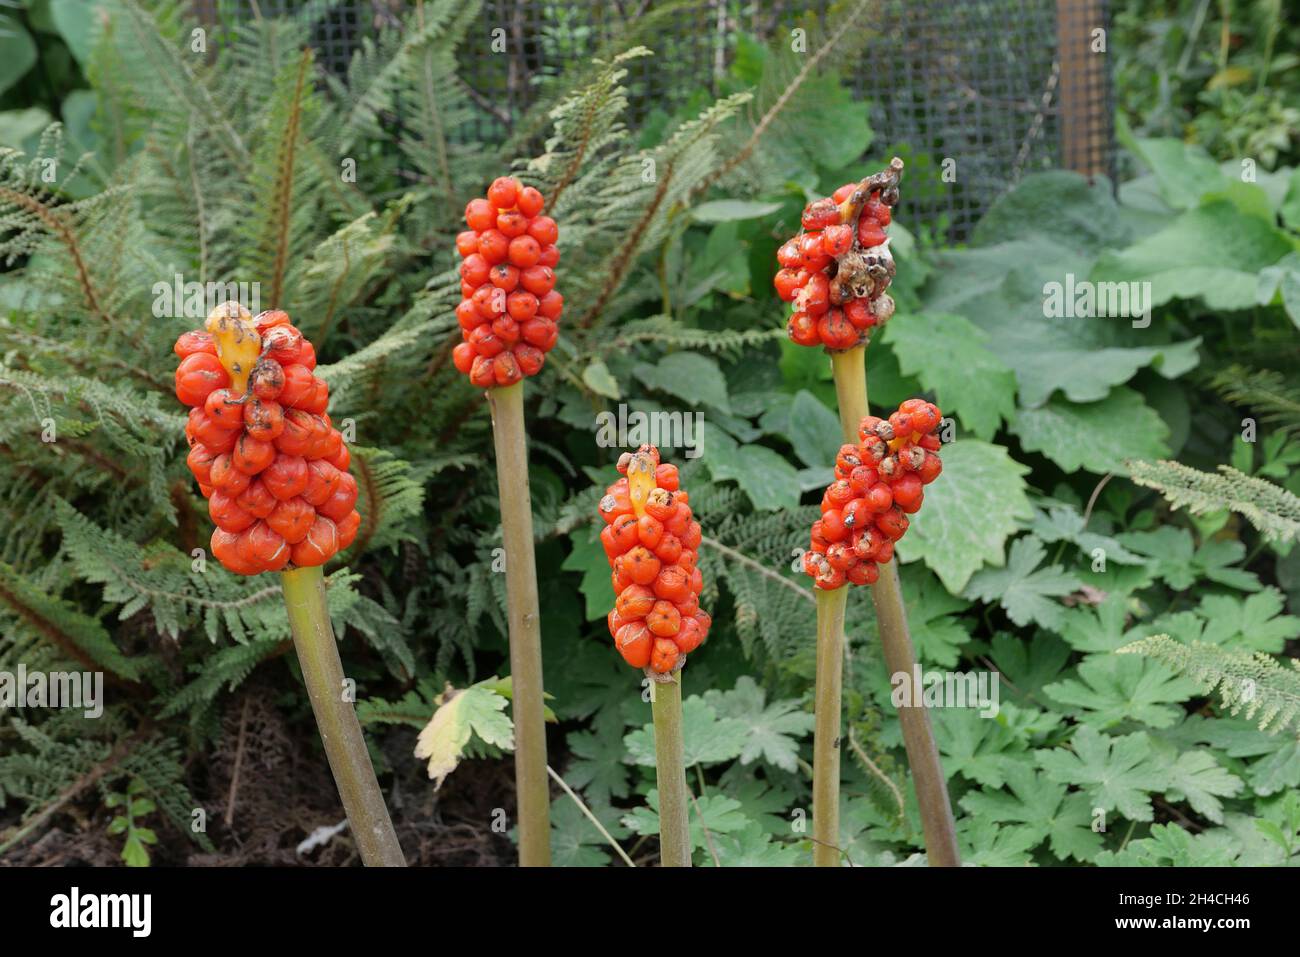 Baies rouges toxiques d'arum maculatum et feuillage dans un cadre boisé  Photo Stock - Alamy